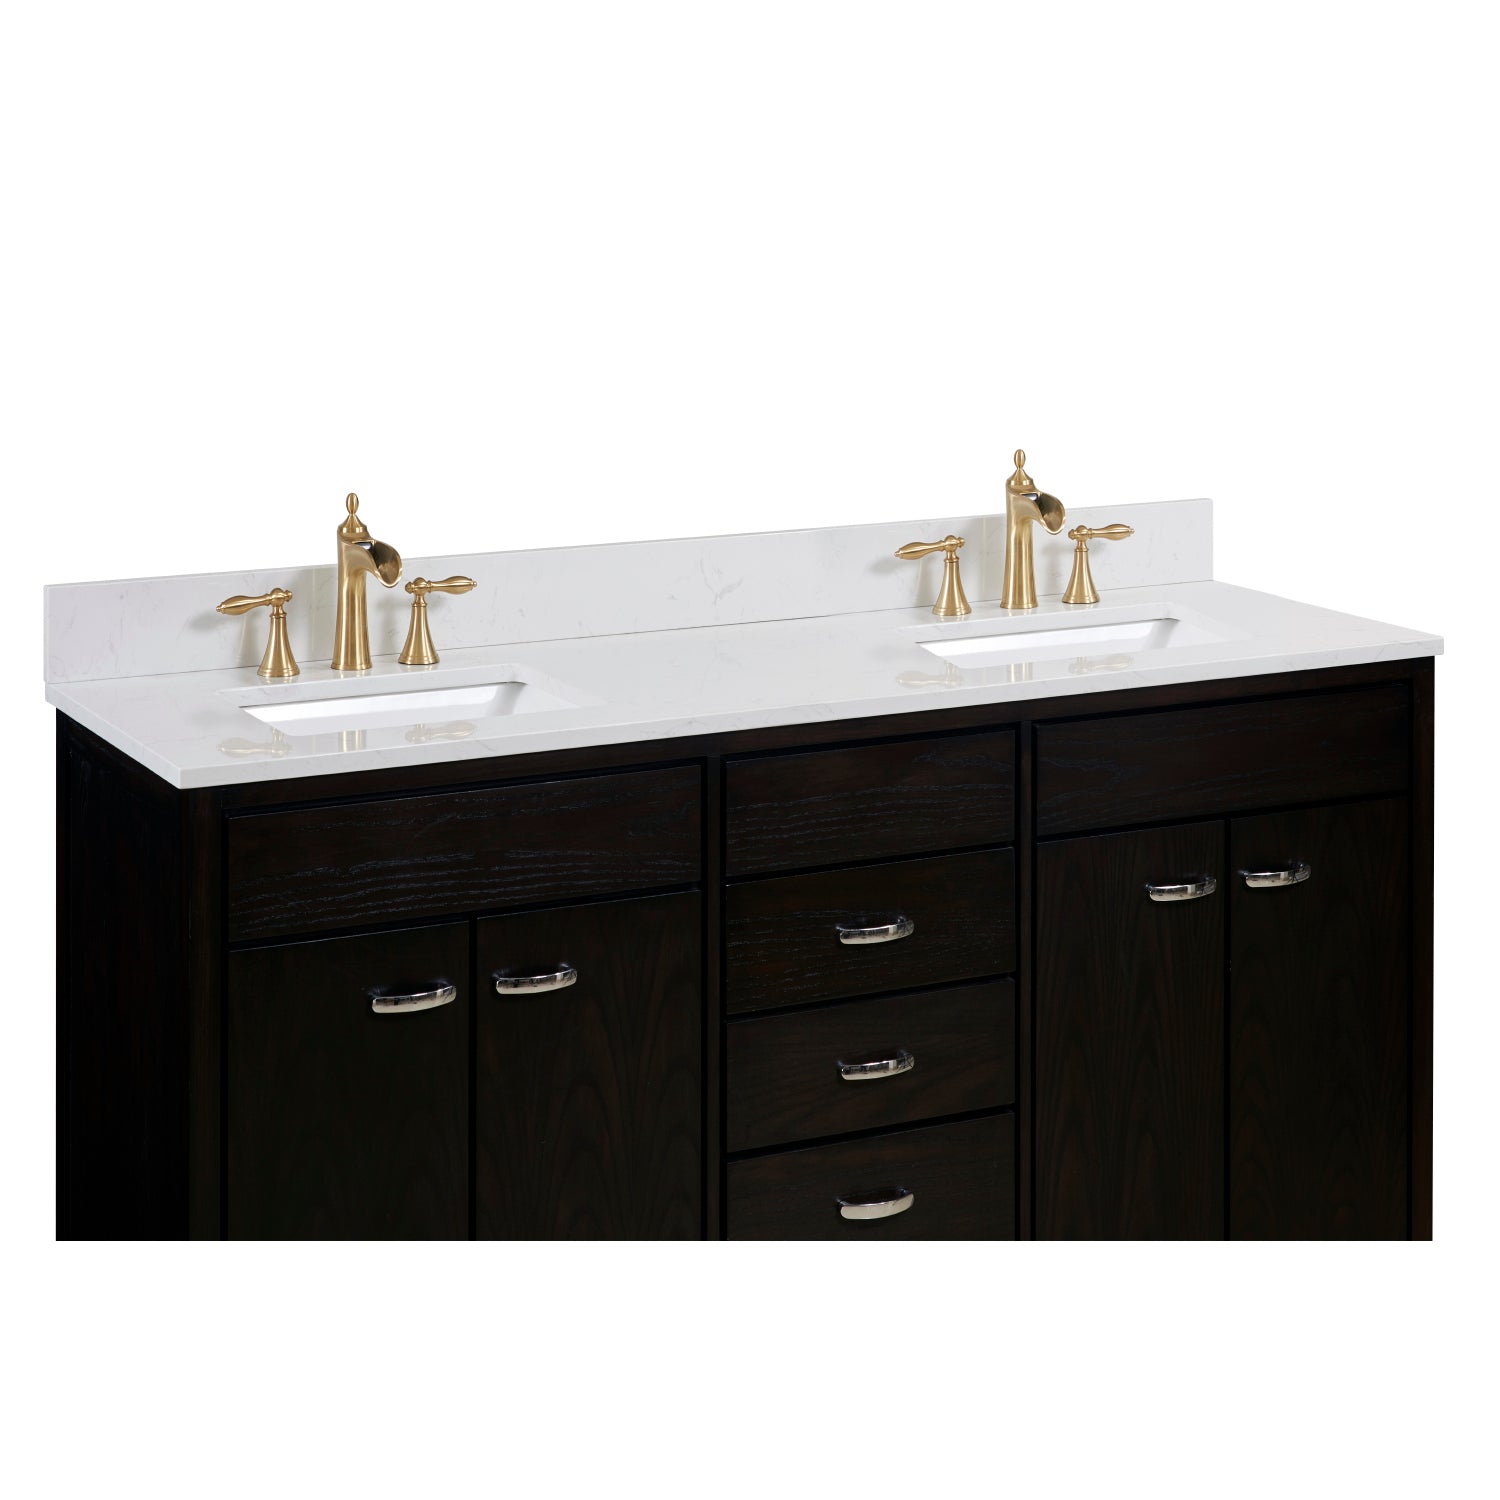 Frosinone Double Sink Bathroom Vanity Countertop in Jazz White